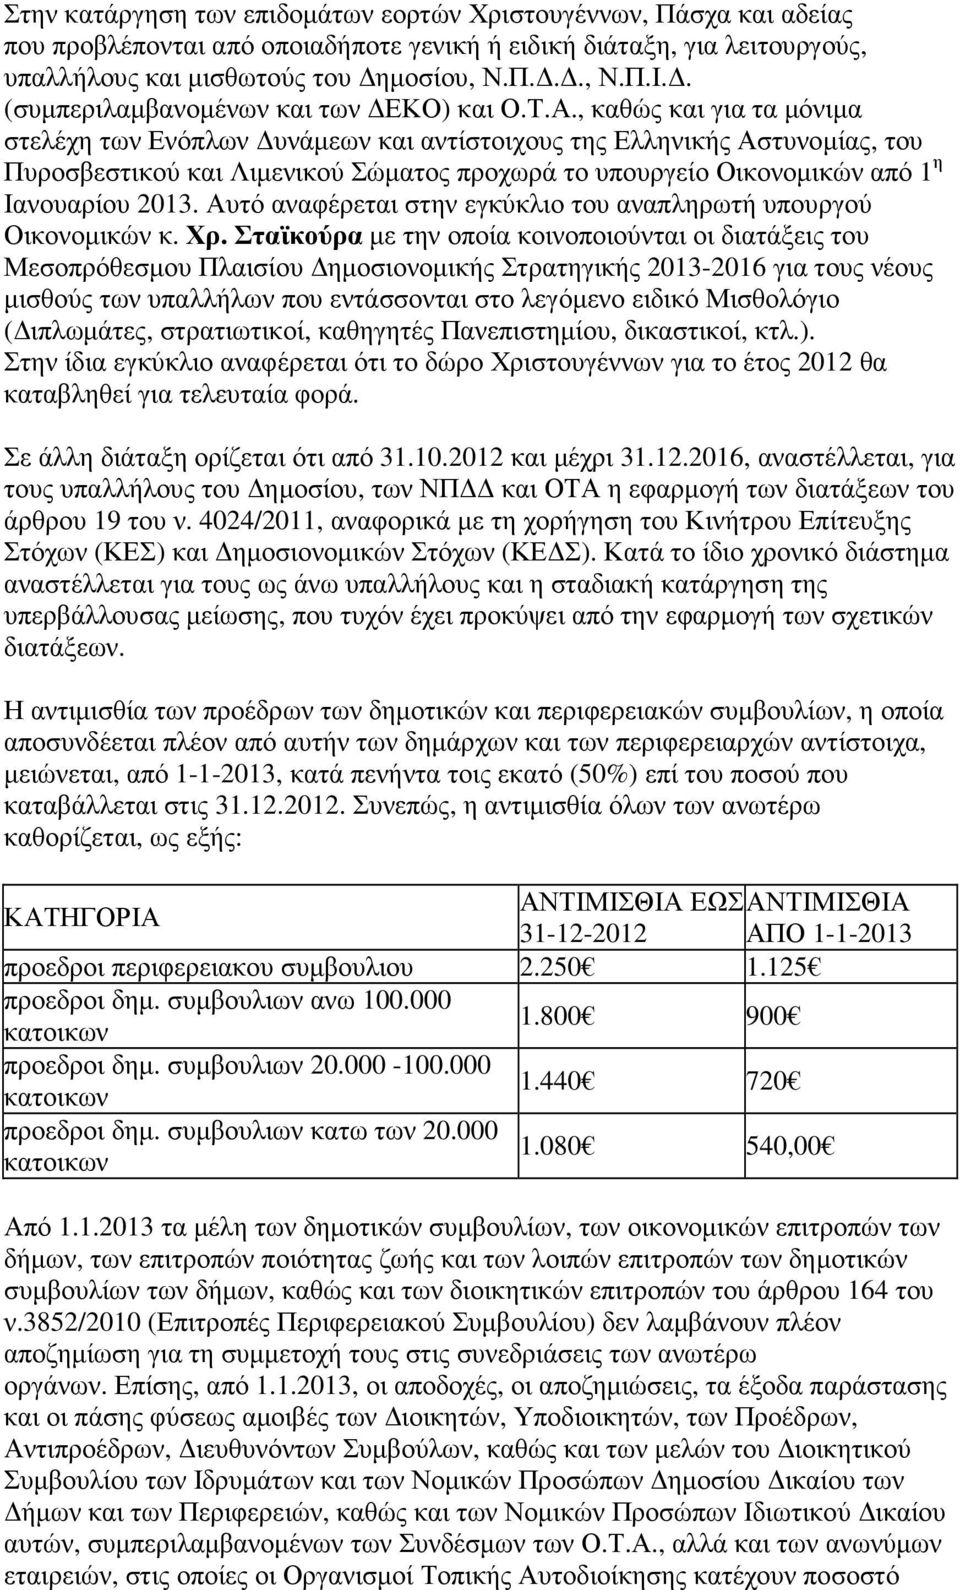 , καθώς και για τα µόνιµα στελέχη των Ενόπλων υνάµεων και αντίστοιχους της Ελληνικής Αστυνοµίας, του Πυροσβεστικού και Λιµενικού Σώµατος προχωρά το υπουργείο Οικονοµικών από 1 η Ιανουαρίου 2013.